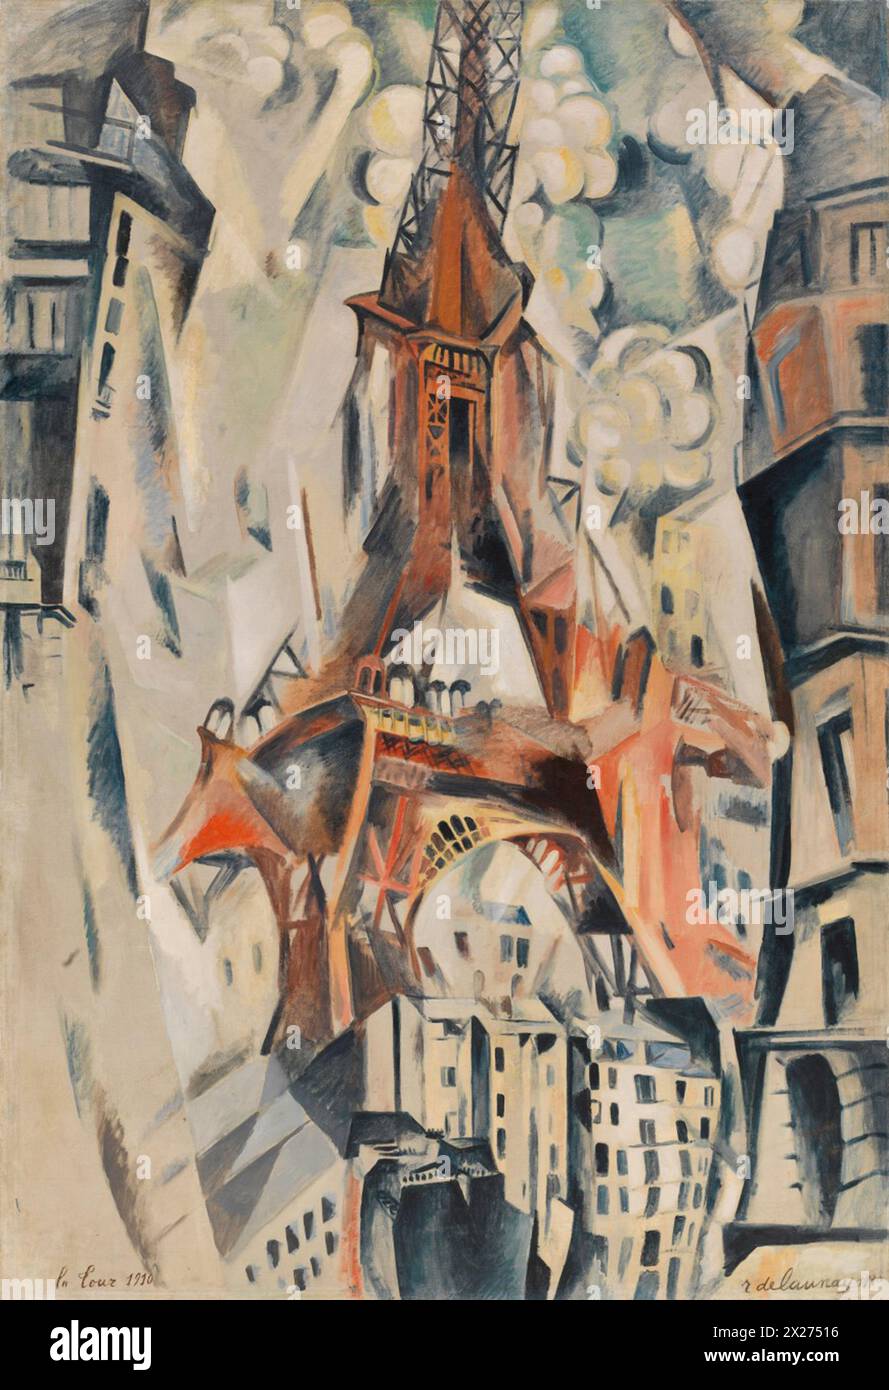 Robert Delaunay - Eiffel Tower - 1911 - Solomon R. Guggenheim Museum Stock Photo